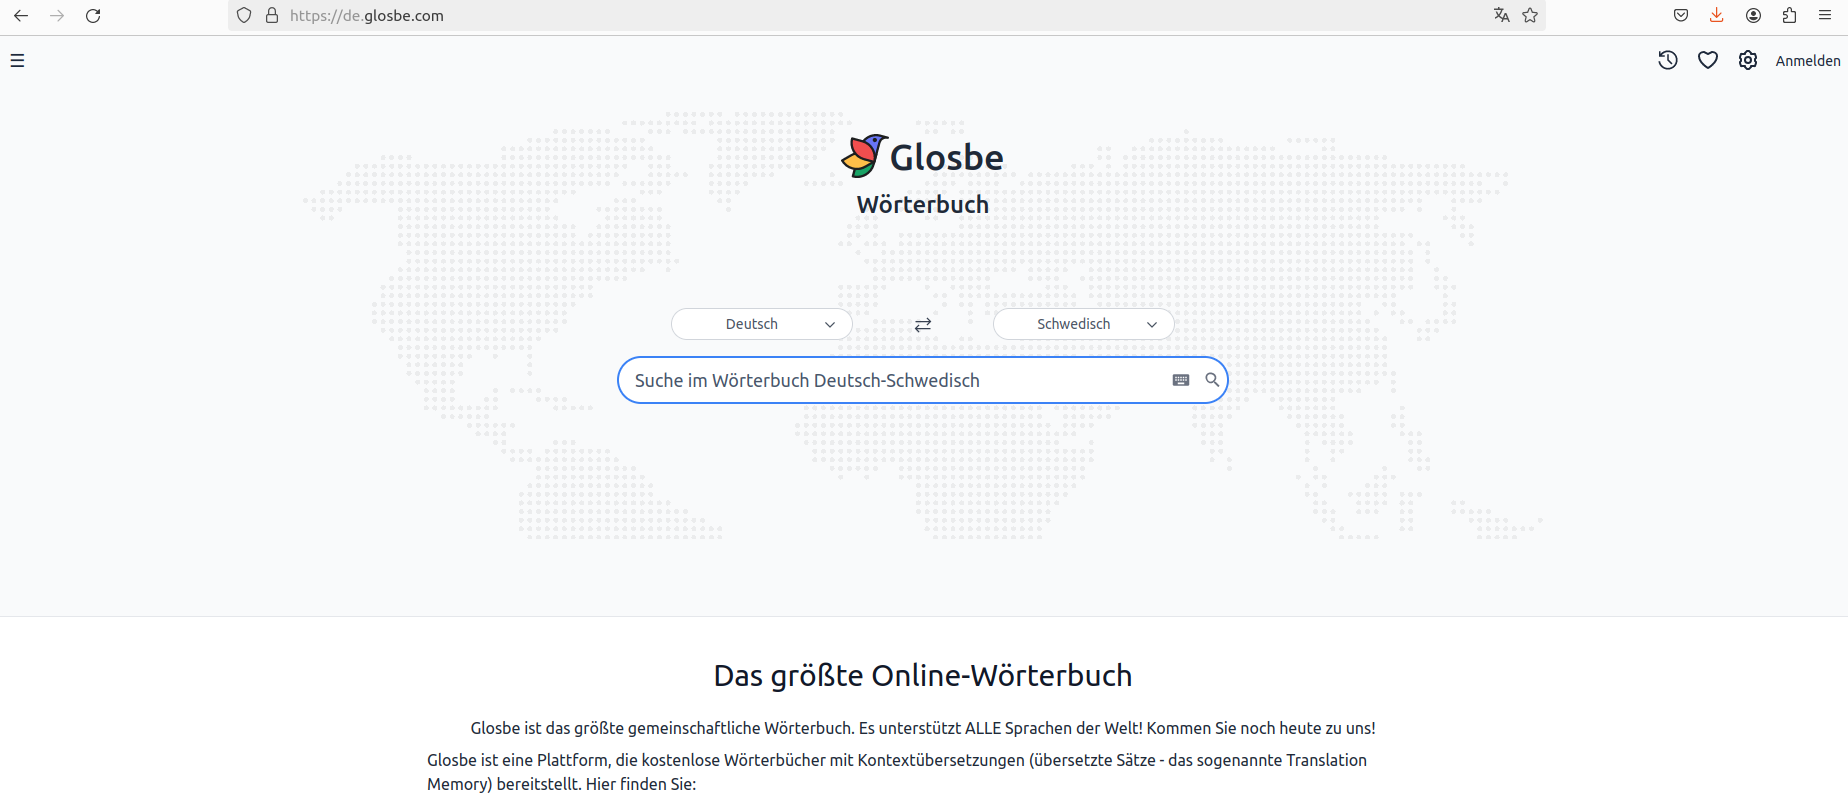 Glosbe ist ein mehrsprachiges Wörterbuch. Es deckt ALLE Sprachen ab und wird von der Community entwickelt, genau wie Wikipedia.